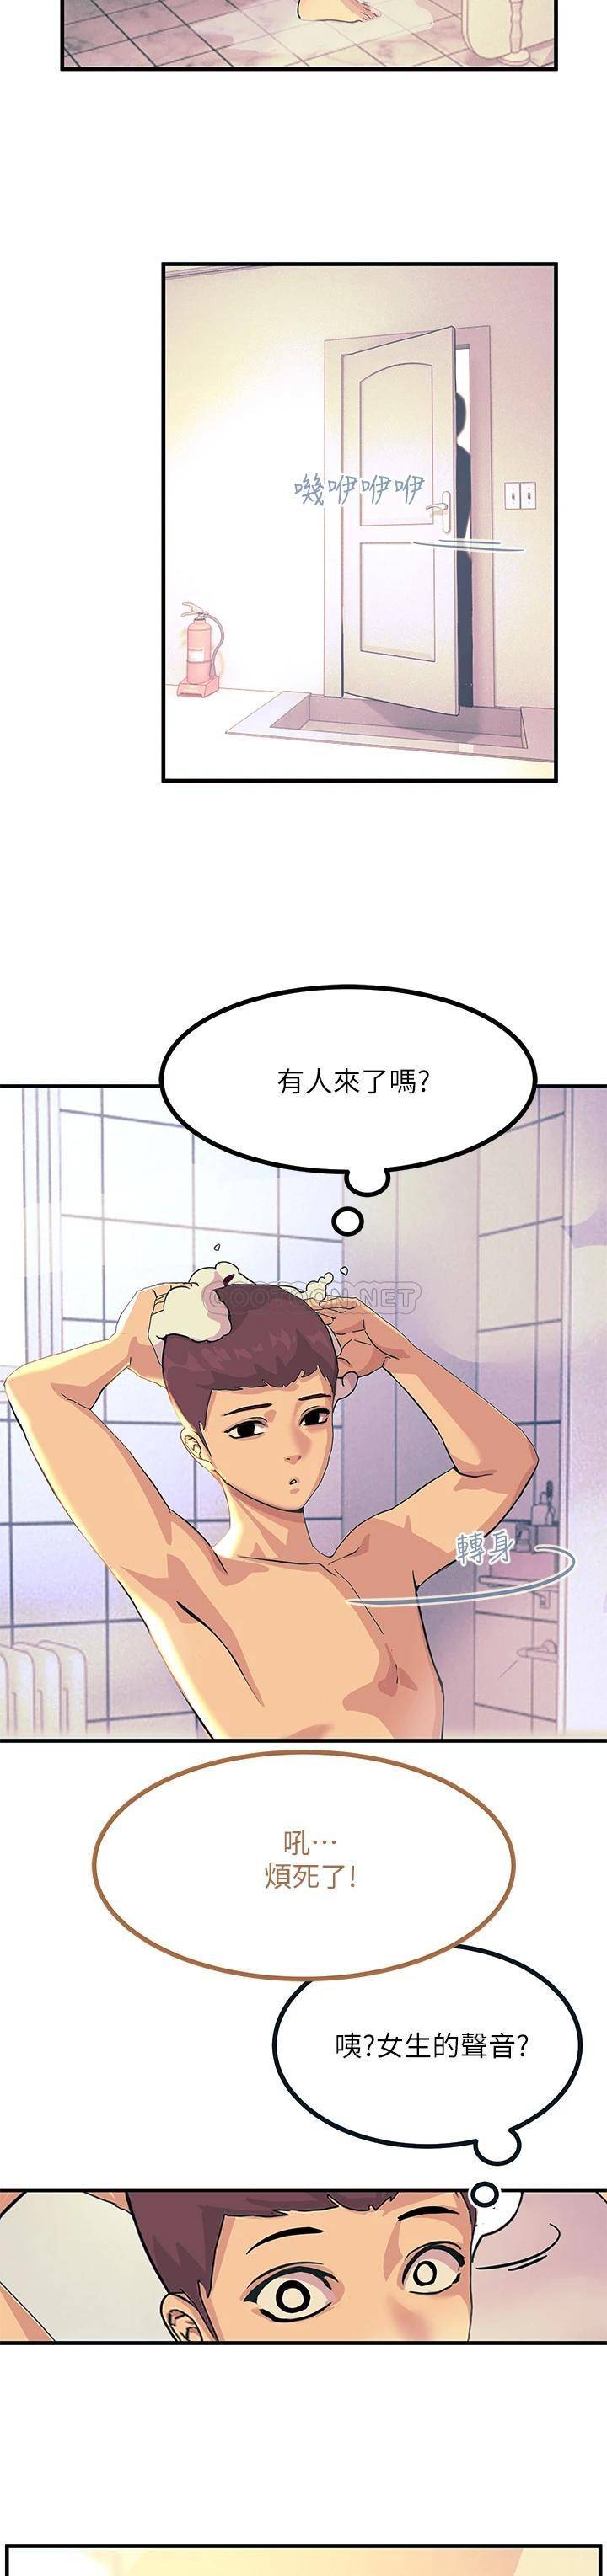 韩国污漫画 觸電大師 第2话 和性感胴体的亲密接触 41